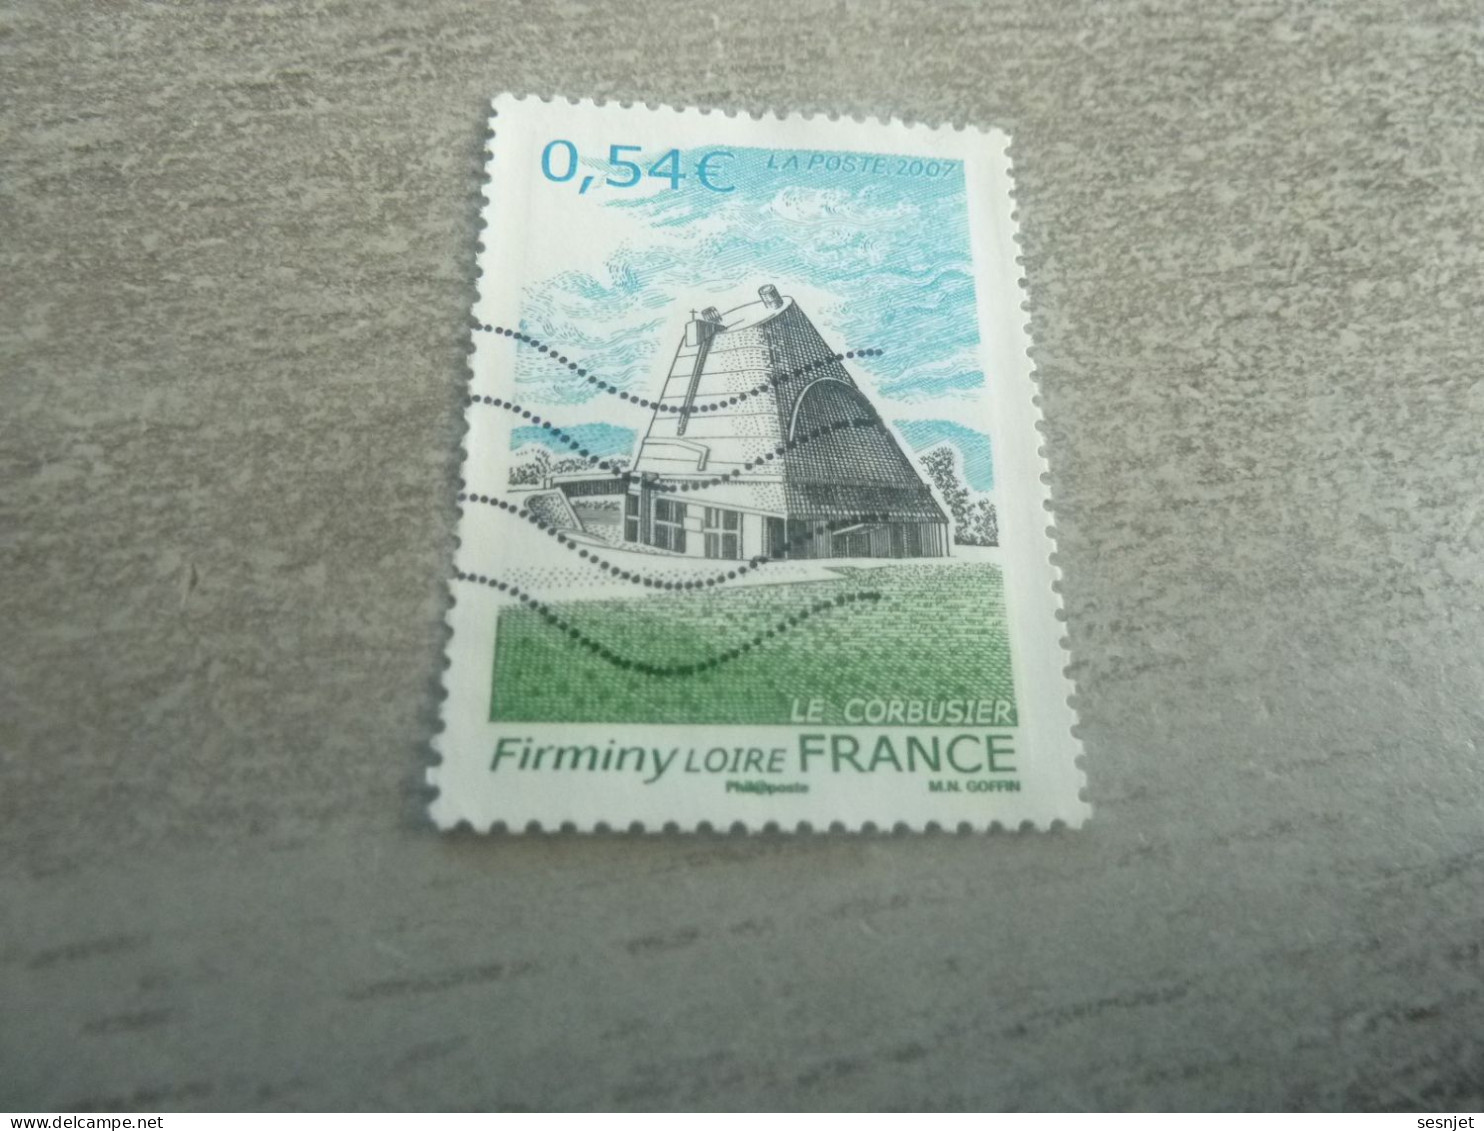 Firminy (Loire) Eglise Saint-Pierre Le Corbusier (1887-1965) - 0.54 € - Yt 4087 - Multicolore - Oblitéré - Année 2007 - - Gebraucht